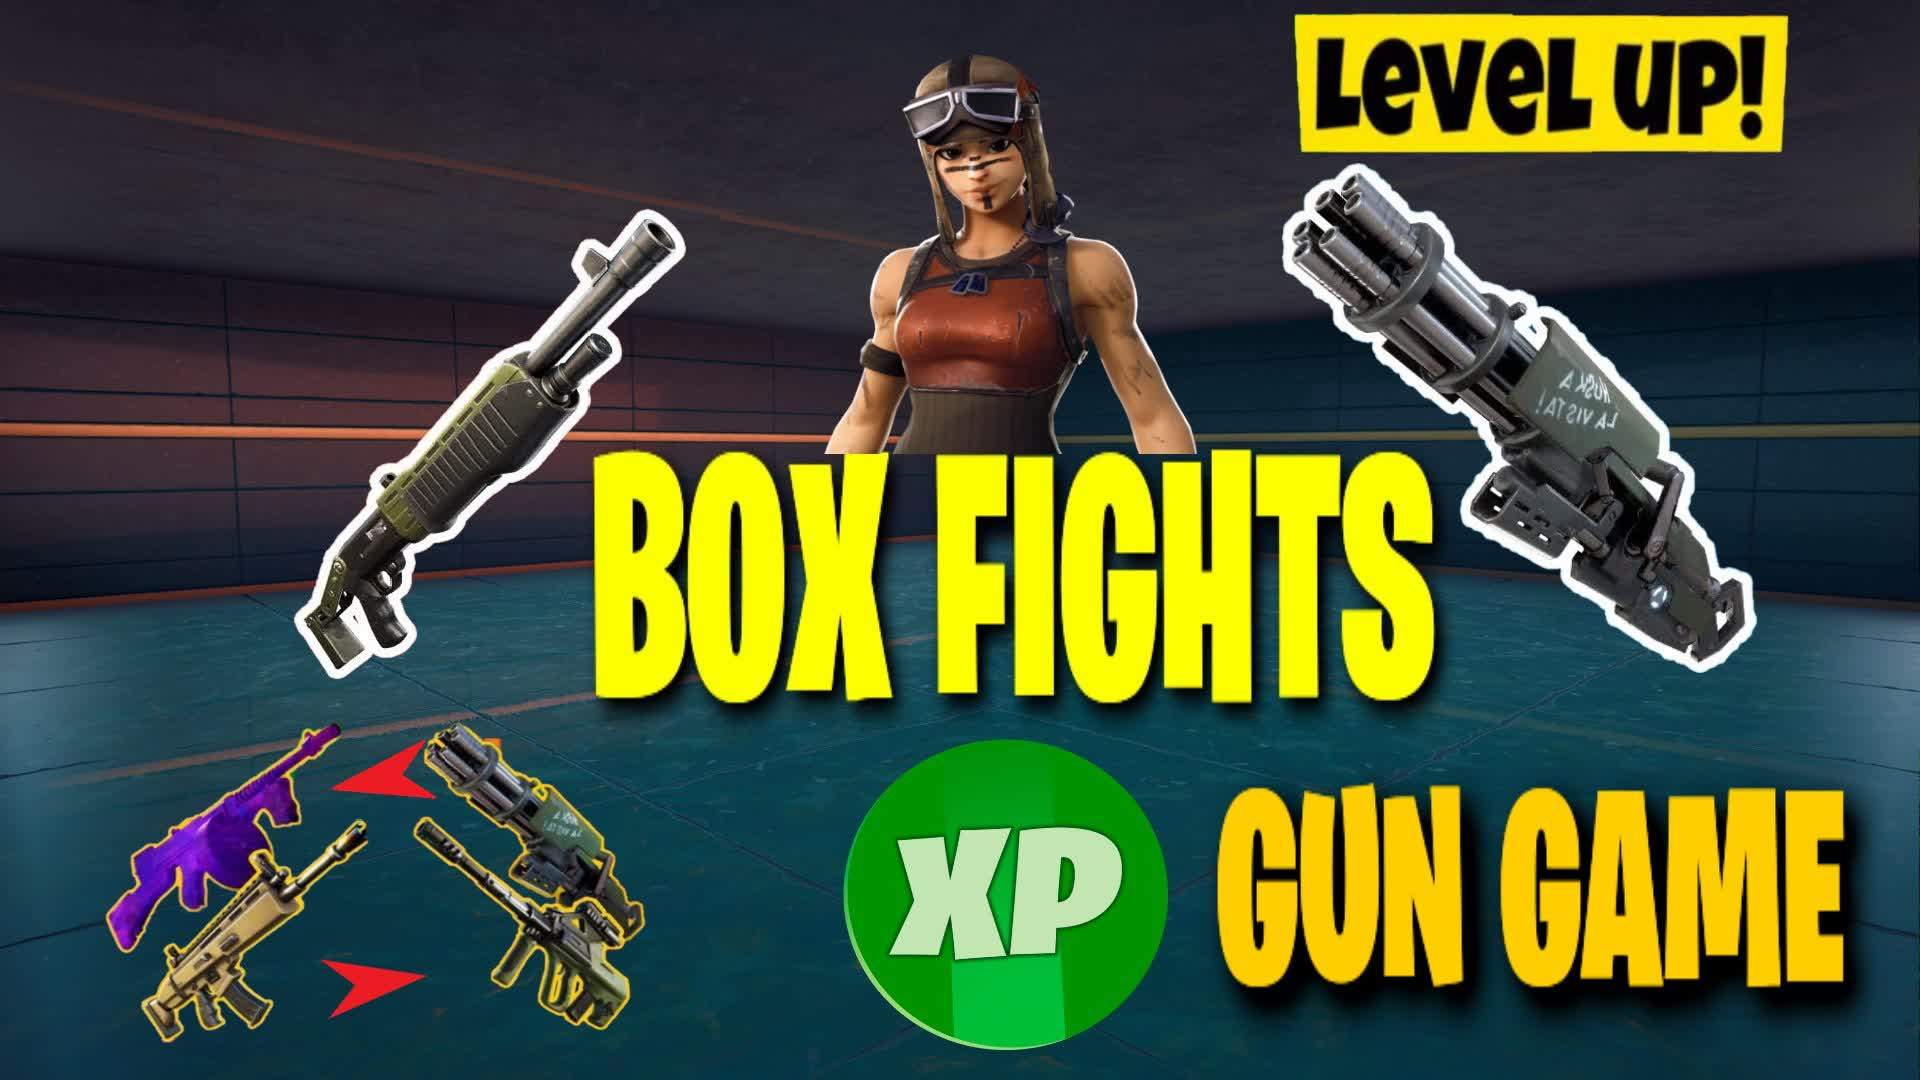 BOXFIGHT X GUN GAME FFA